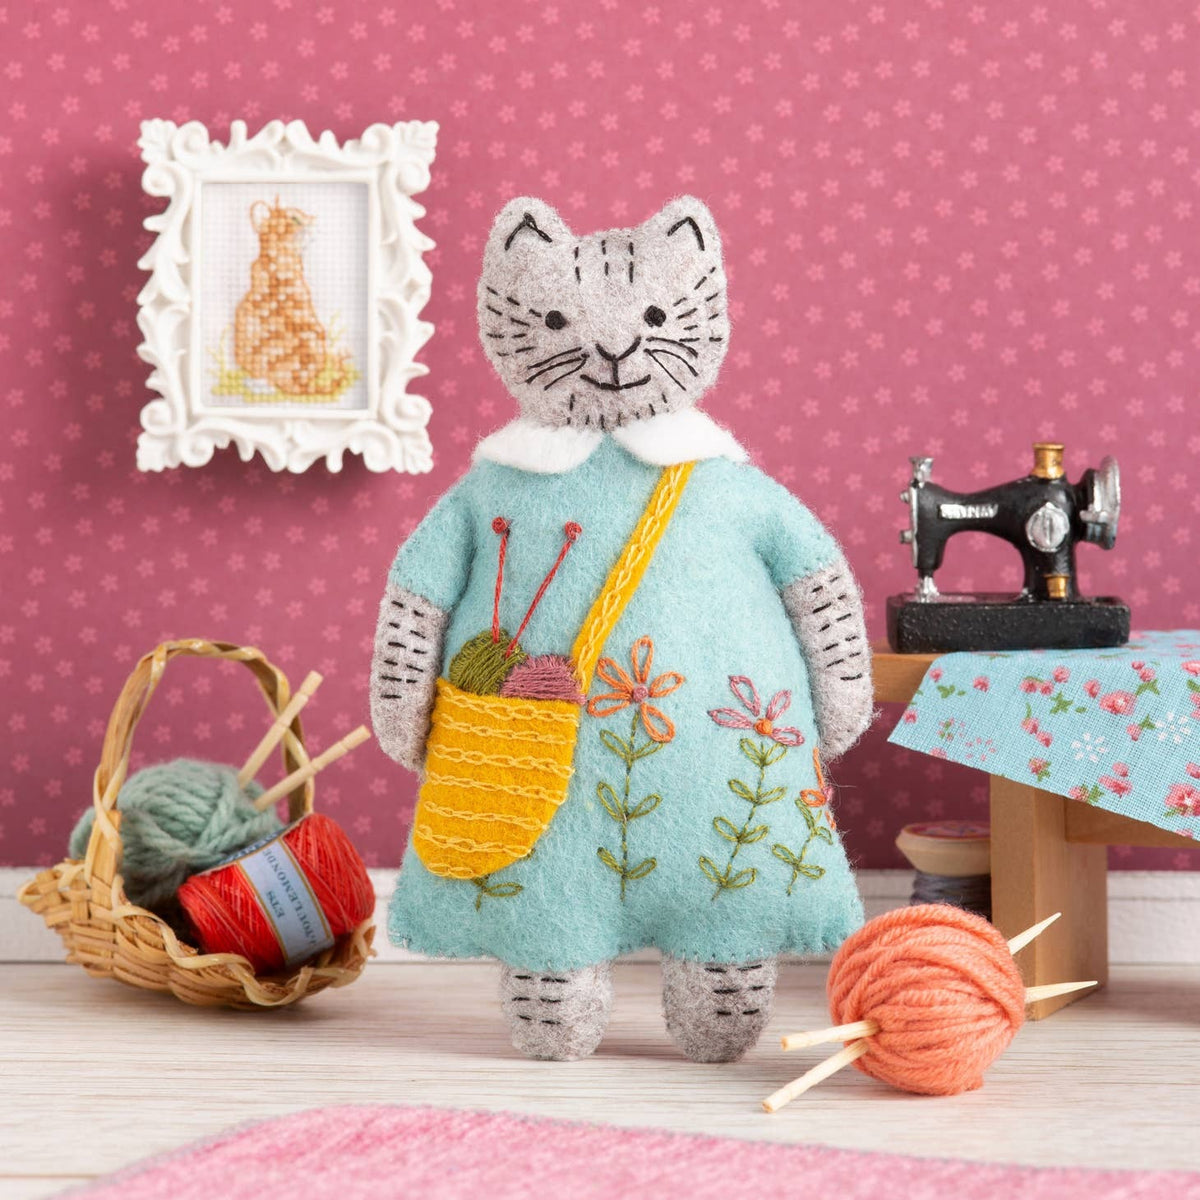 Wool Felt Stitching Kit - Cottage Mouse Family.